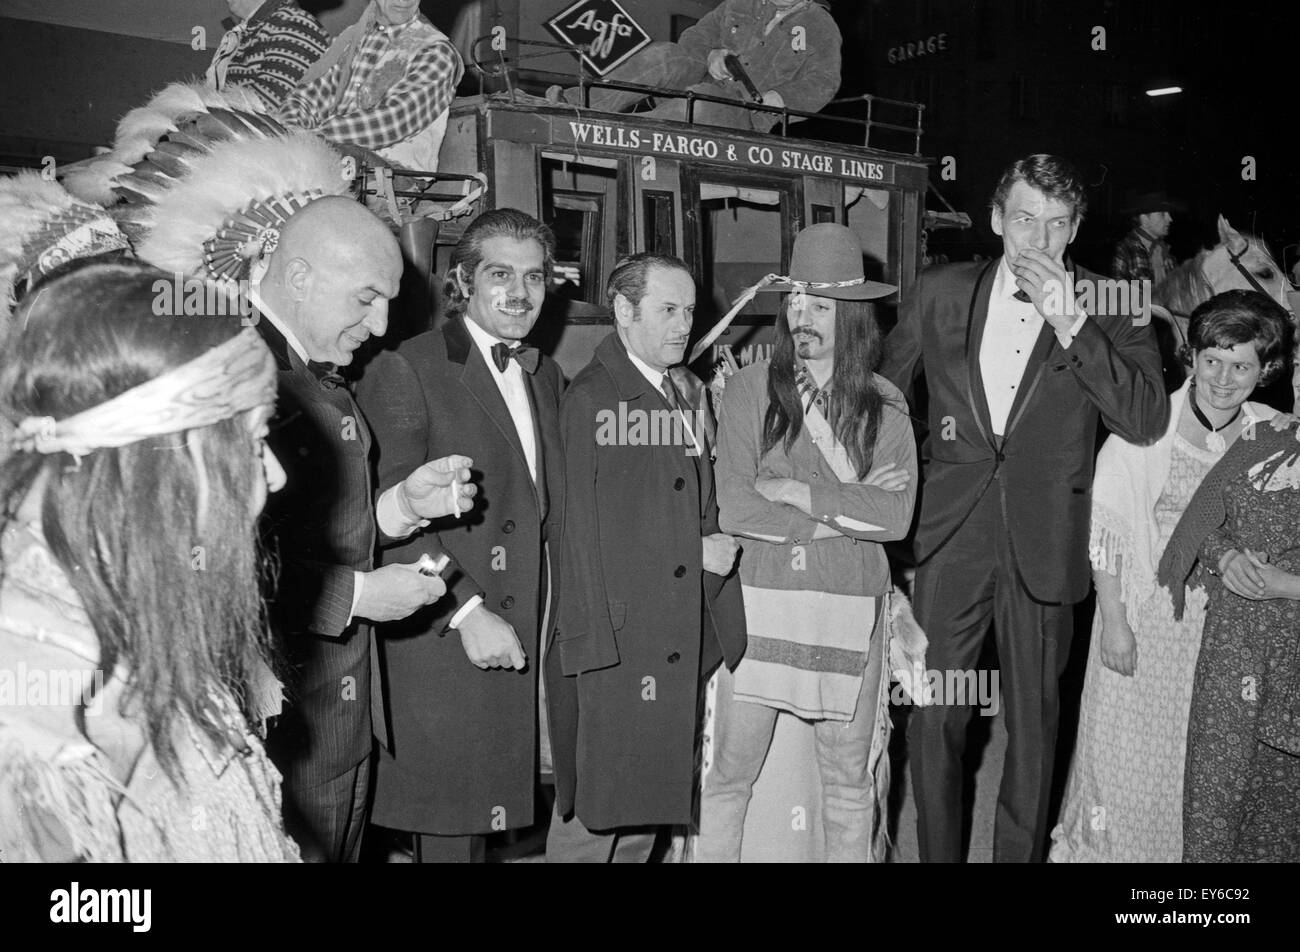 Der ägyptische Schauspieler Omar Sharif mit Kollege Telly Savalas in München, Deutschland 1960er Jahre. Egyptian actor Omar Sharif an Telly Savalas visiting Munich, Germany 1960s. 24x36Neg368 Stock Photo